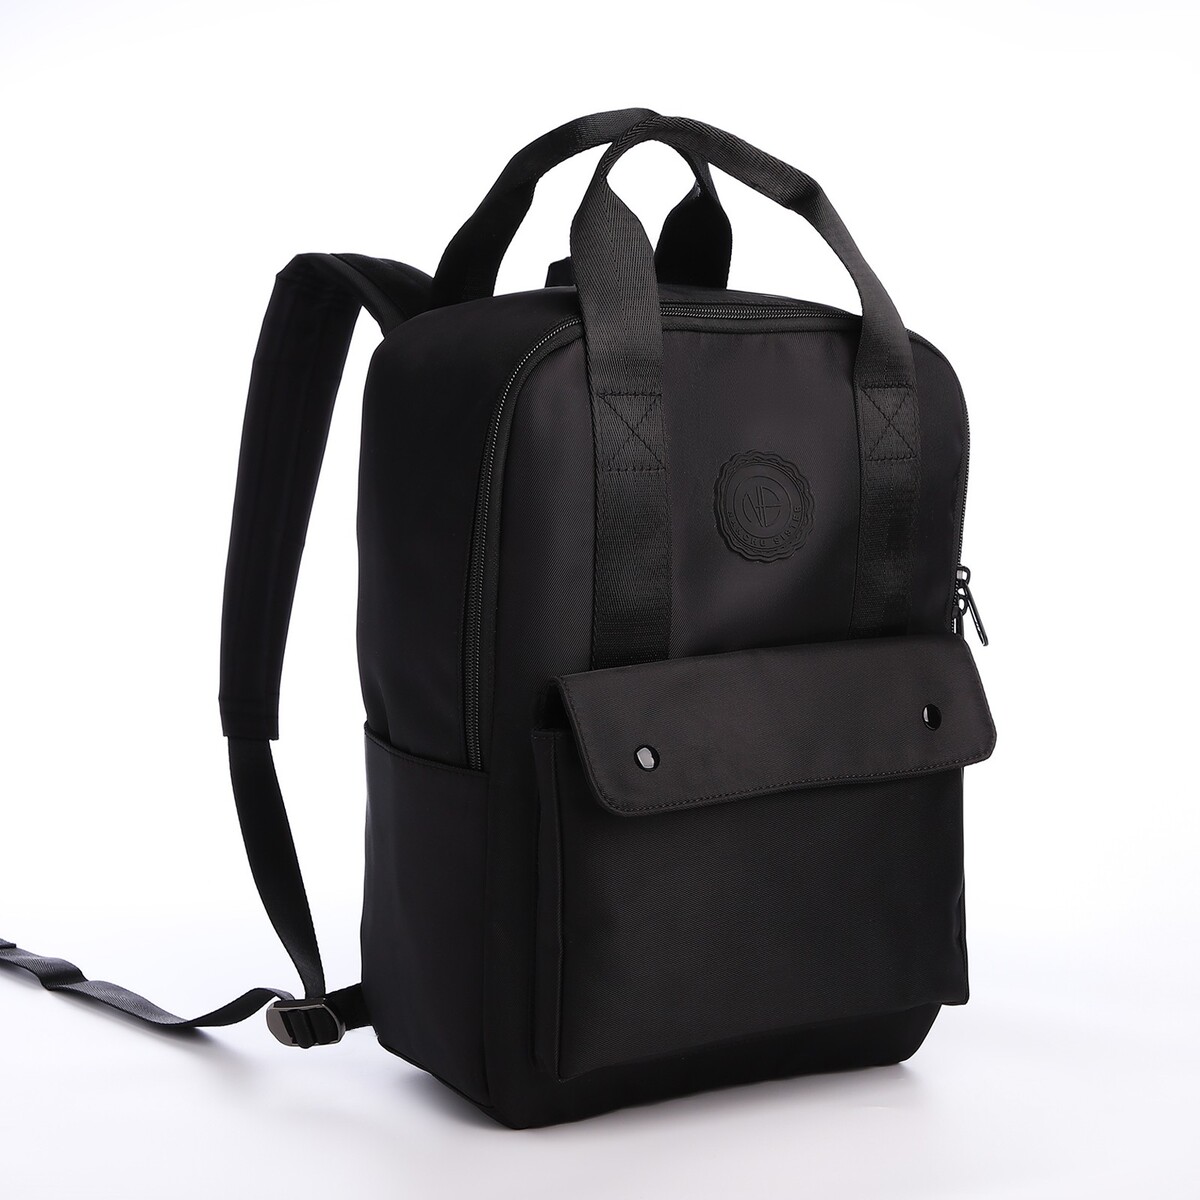 Рюкзак молодежный из текстиля на молнии, отдел для ноутбука, 4 кармана, цвет черный рюкзак для ноутбука razer concourse pro 17 3 rc81 02920101 0500